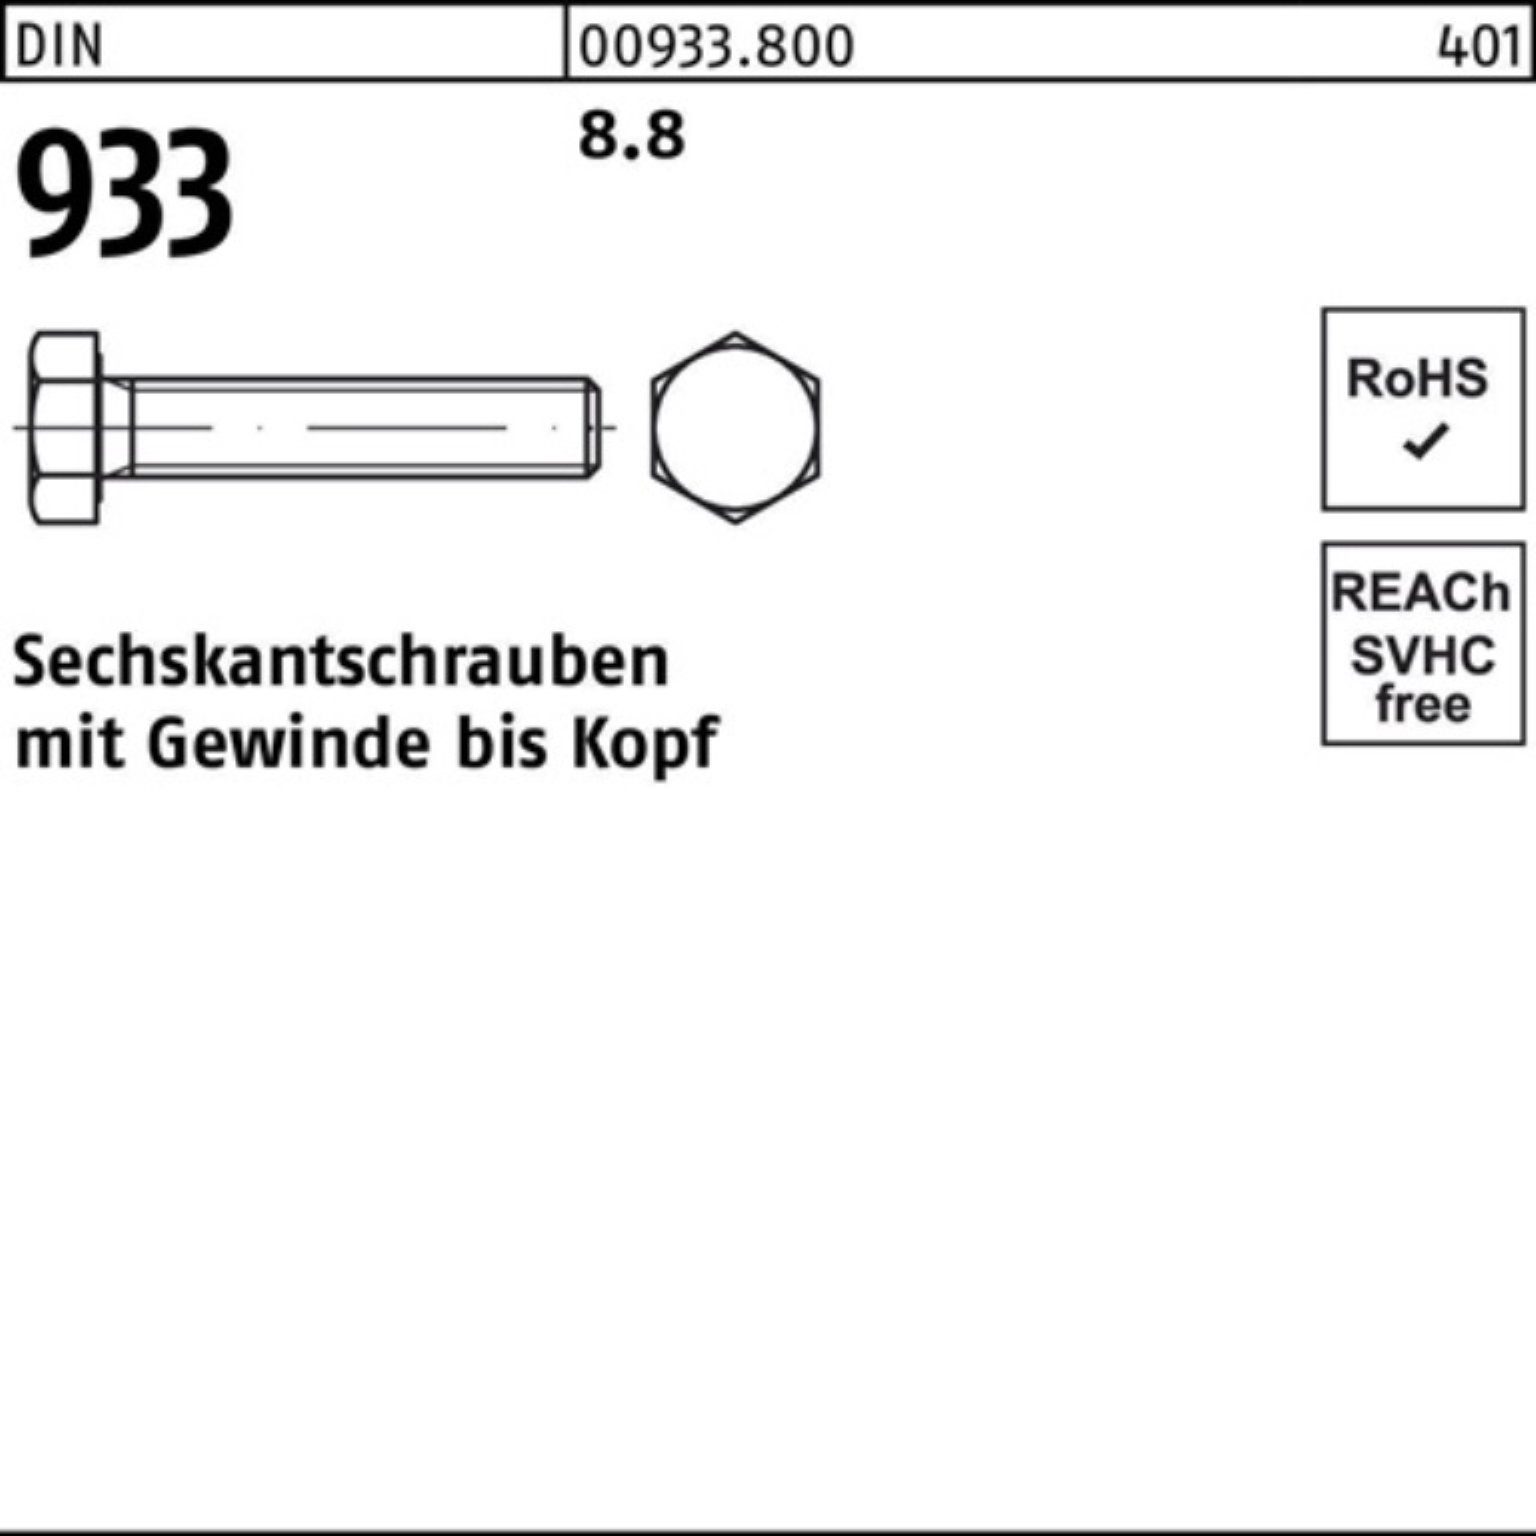 Reyher Sechskantschraube 100er Pack 8.8 VG M22x Sechskantschraube 933 933 DIN Stück DIN 1 170